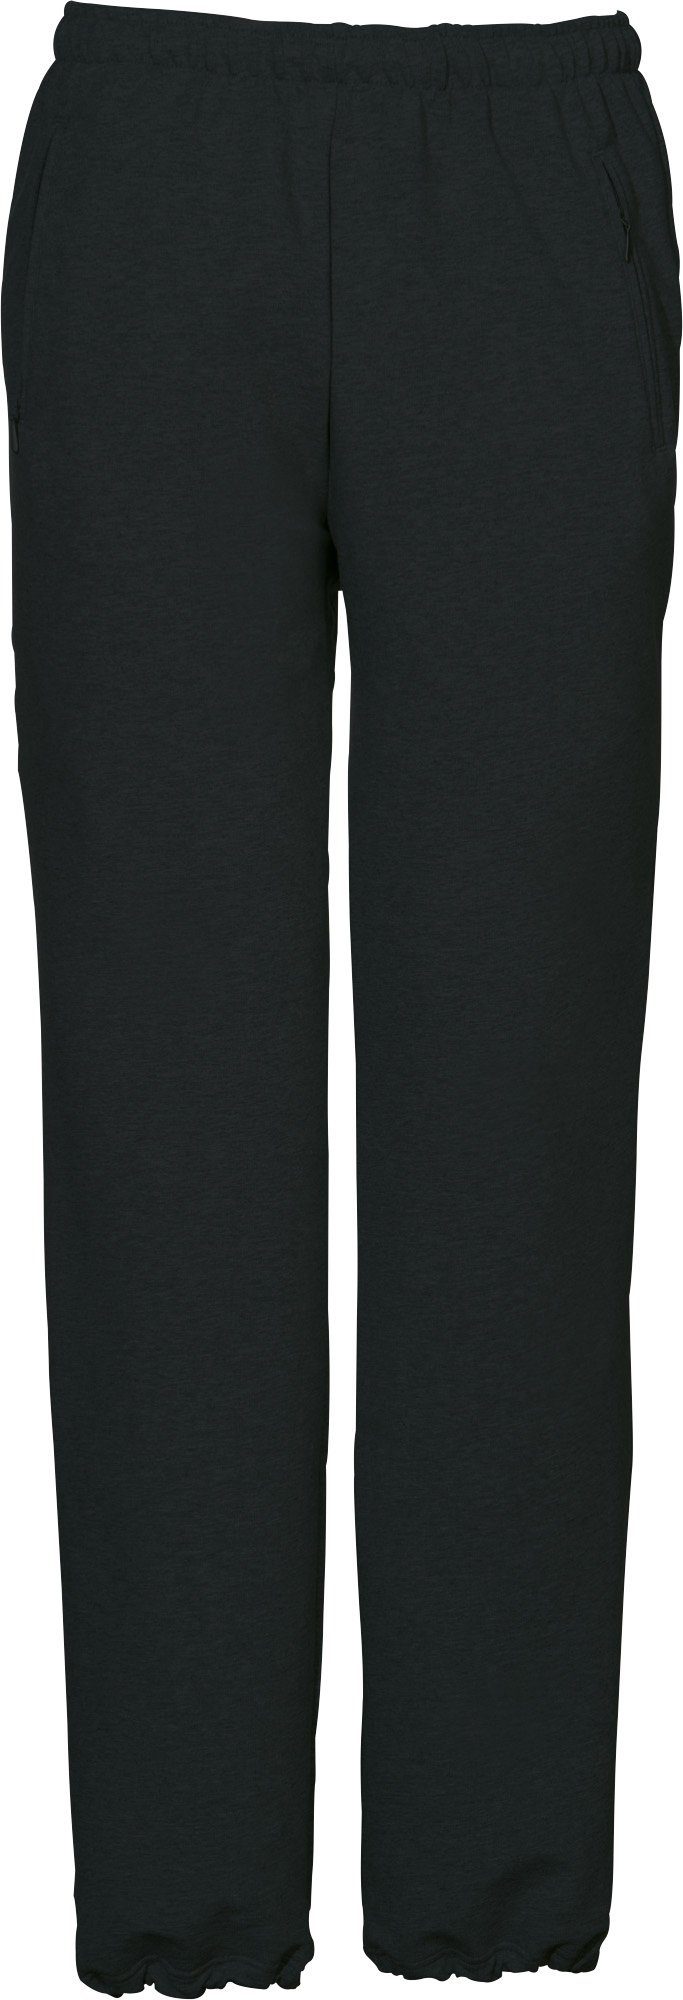 SCHNEIDER Sportswear "HORGENM", Uni schwarz lang Herren-Freizeithose Jogginghose